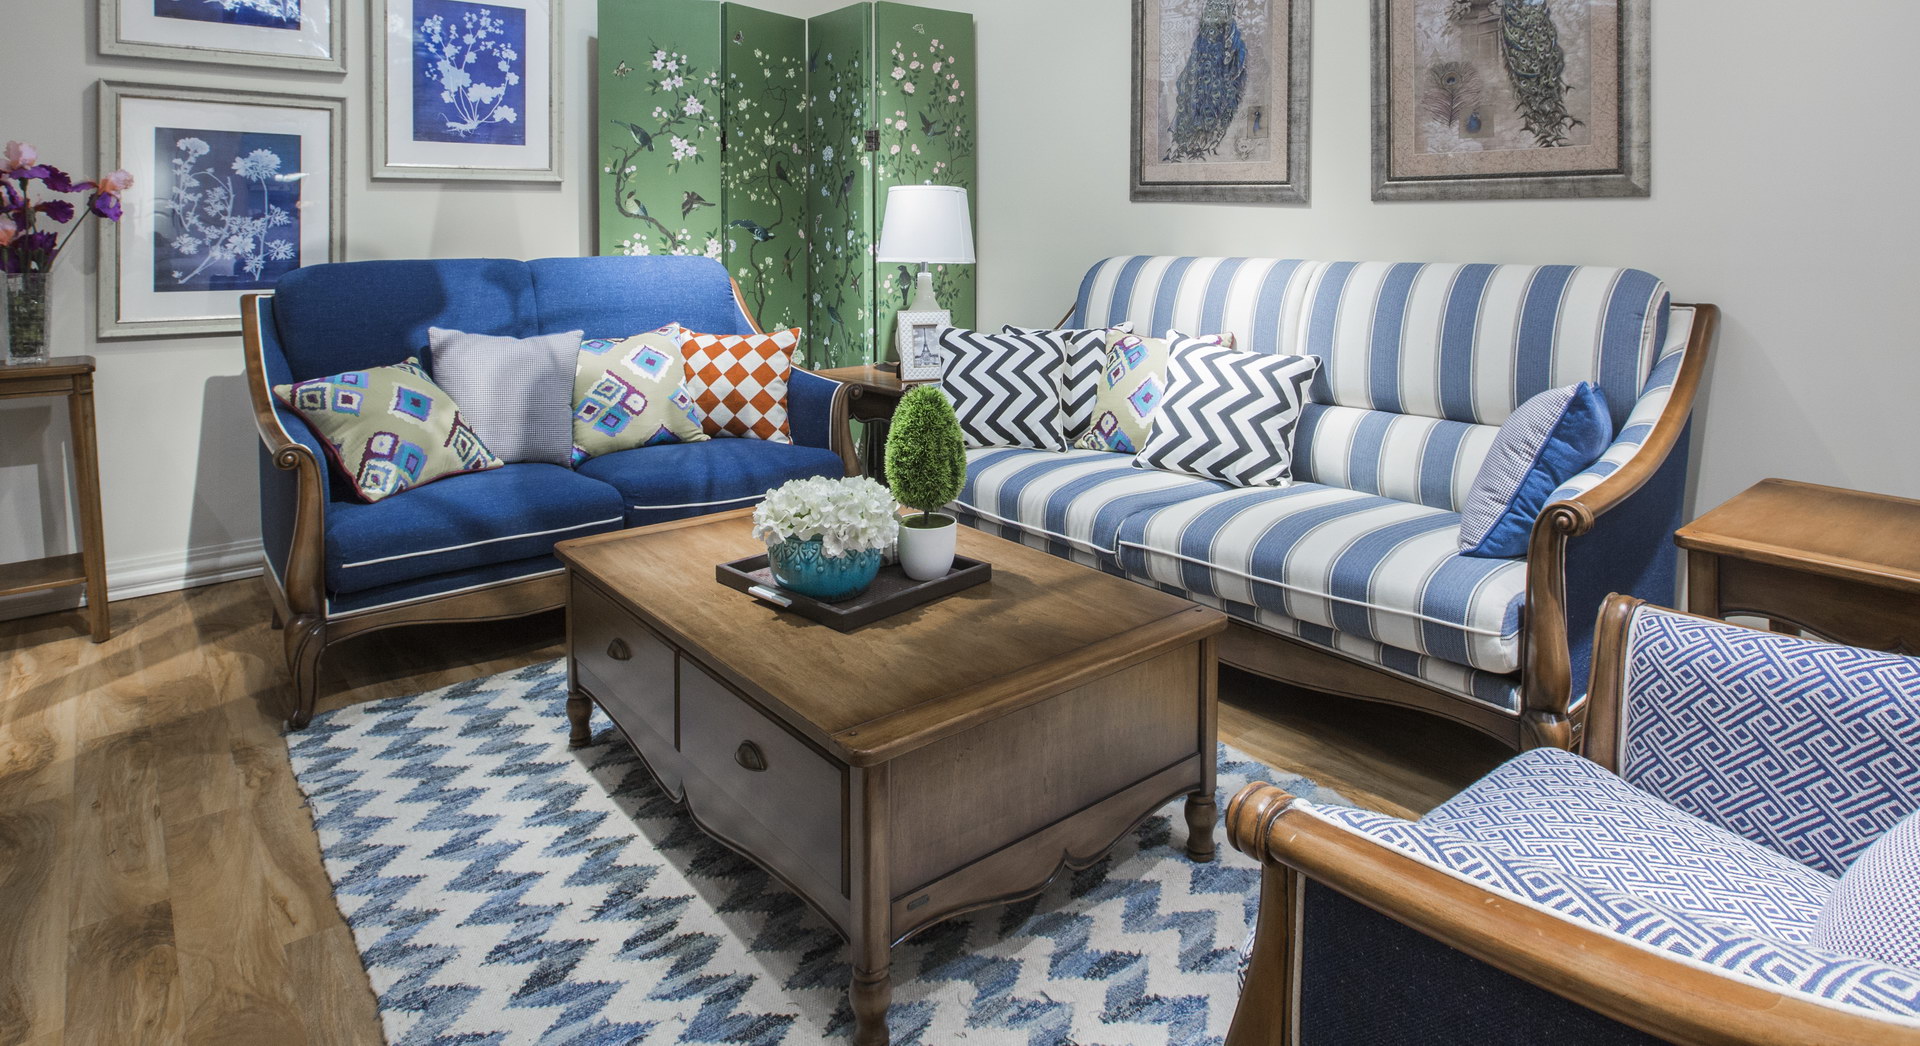 花纹不同的沙发组合在一个客厅,不失和谐,而且拥有简欧的古朴,田园的